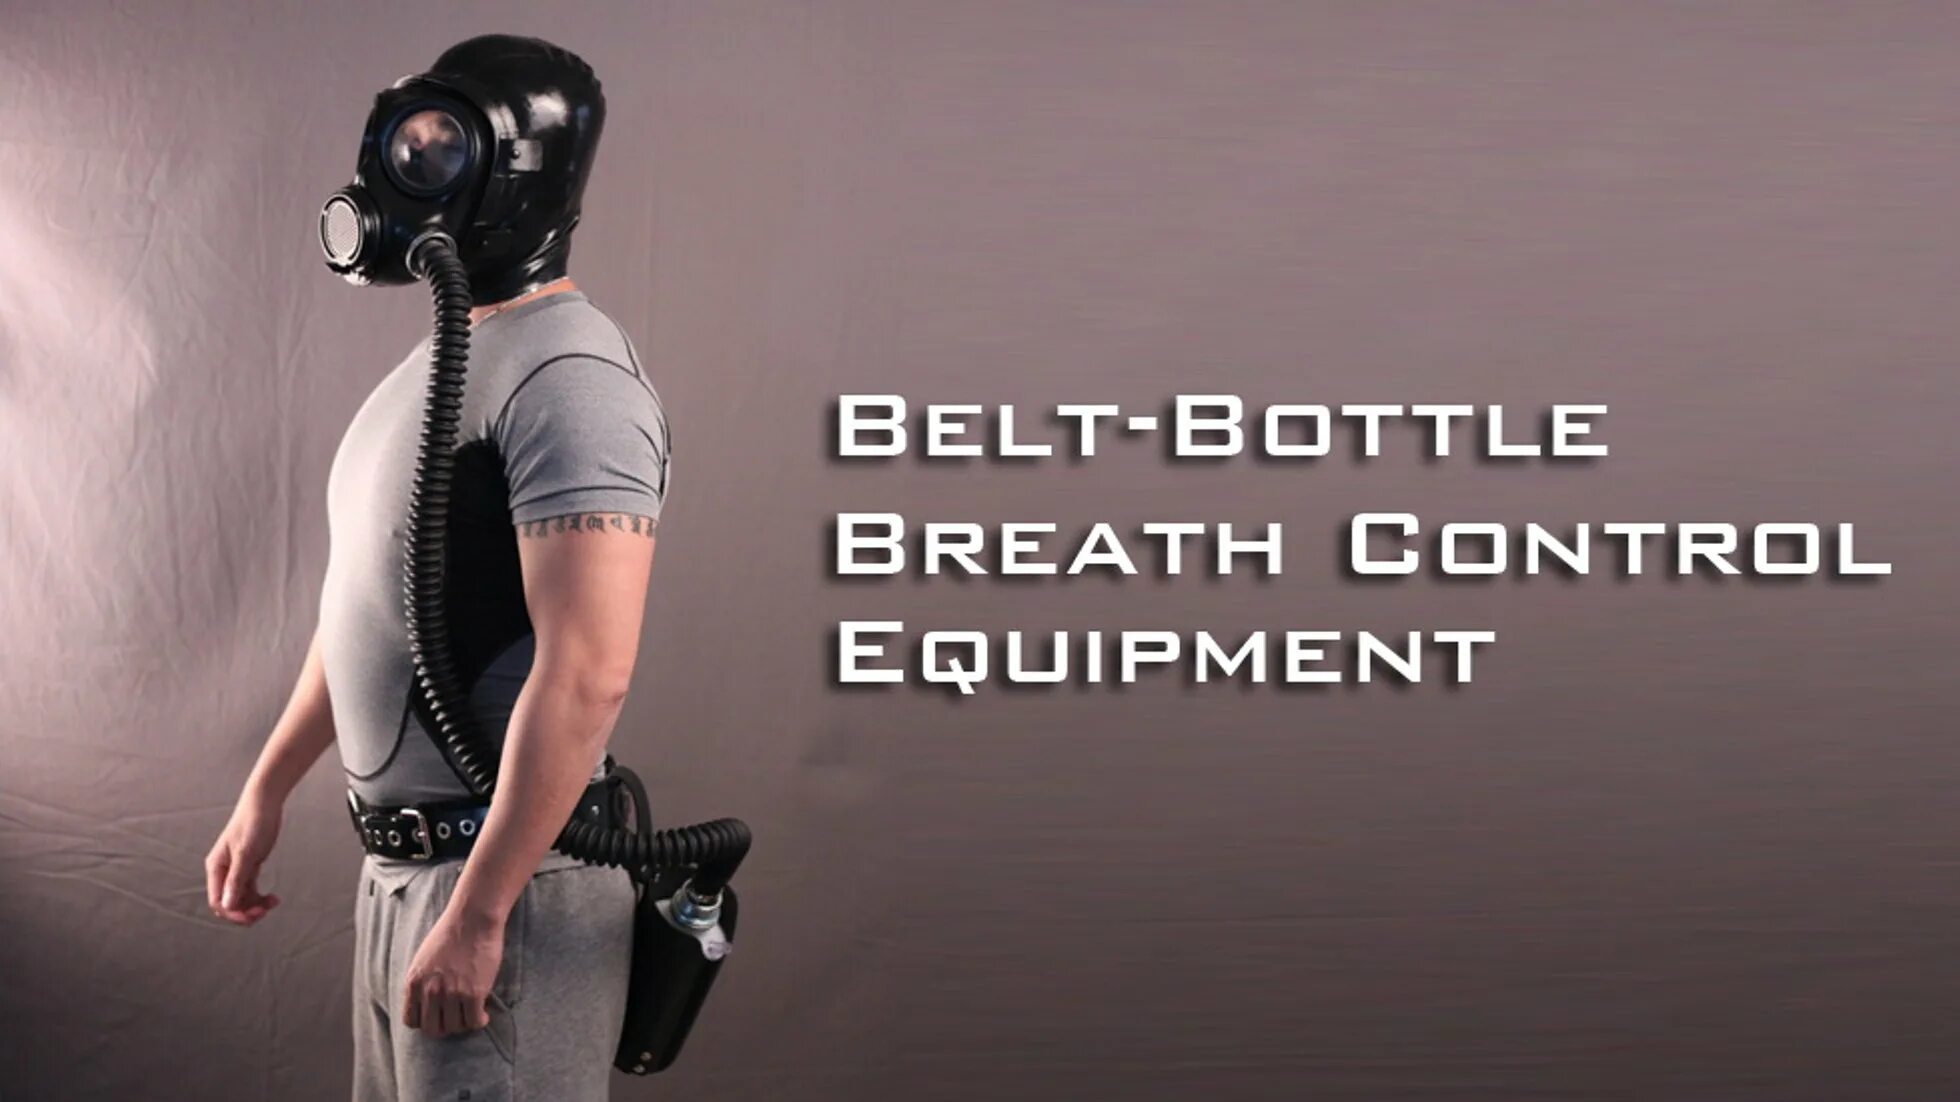 Контроль дыхания латекс. Маска для контроля дыхания латекс. Бдсм в маске контроль дыхания. Латекс противогаз игра с дыханием. Breath control